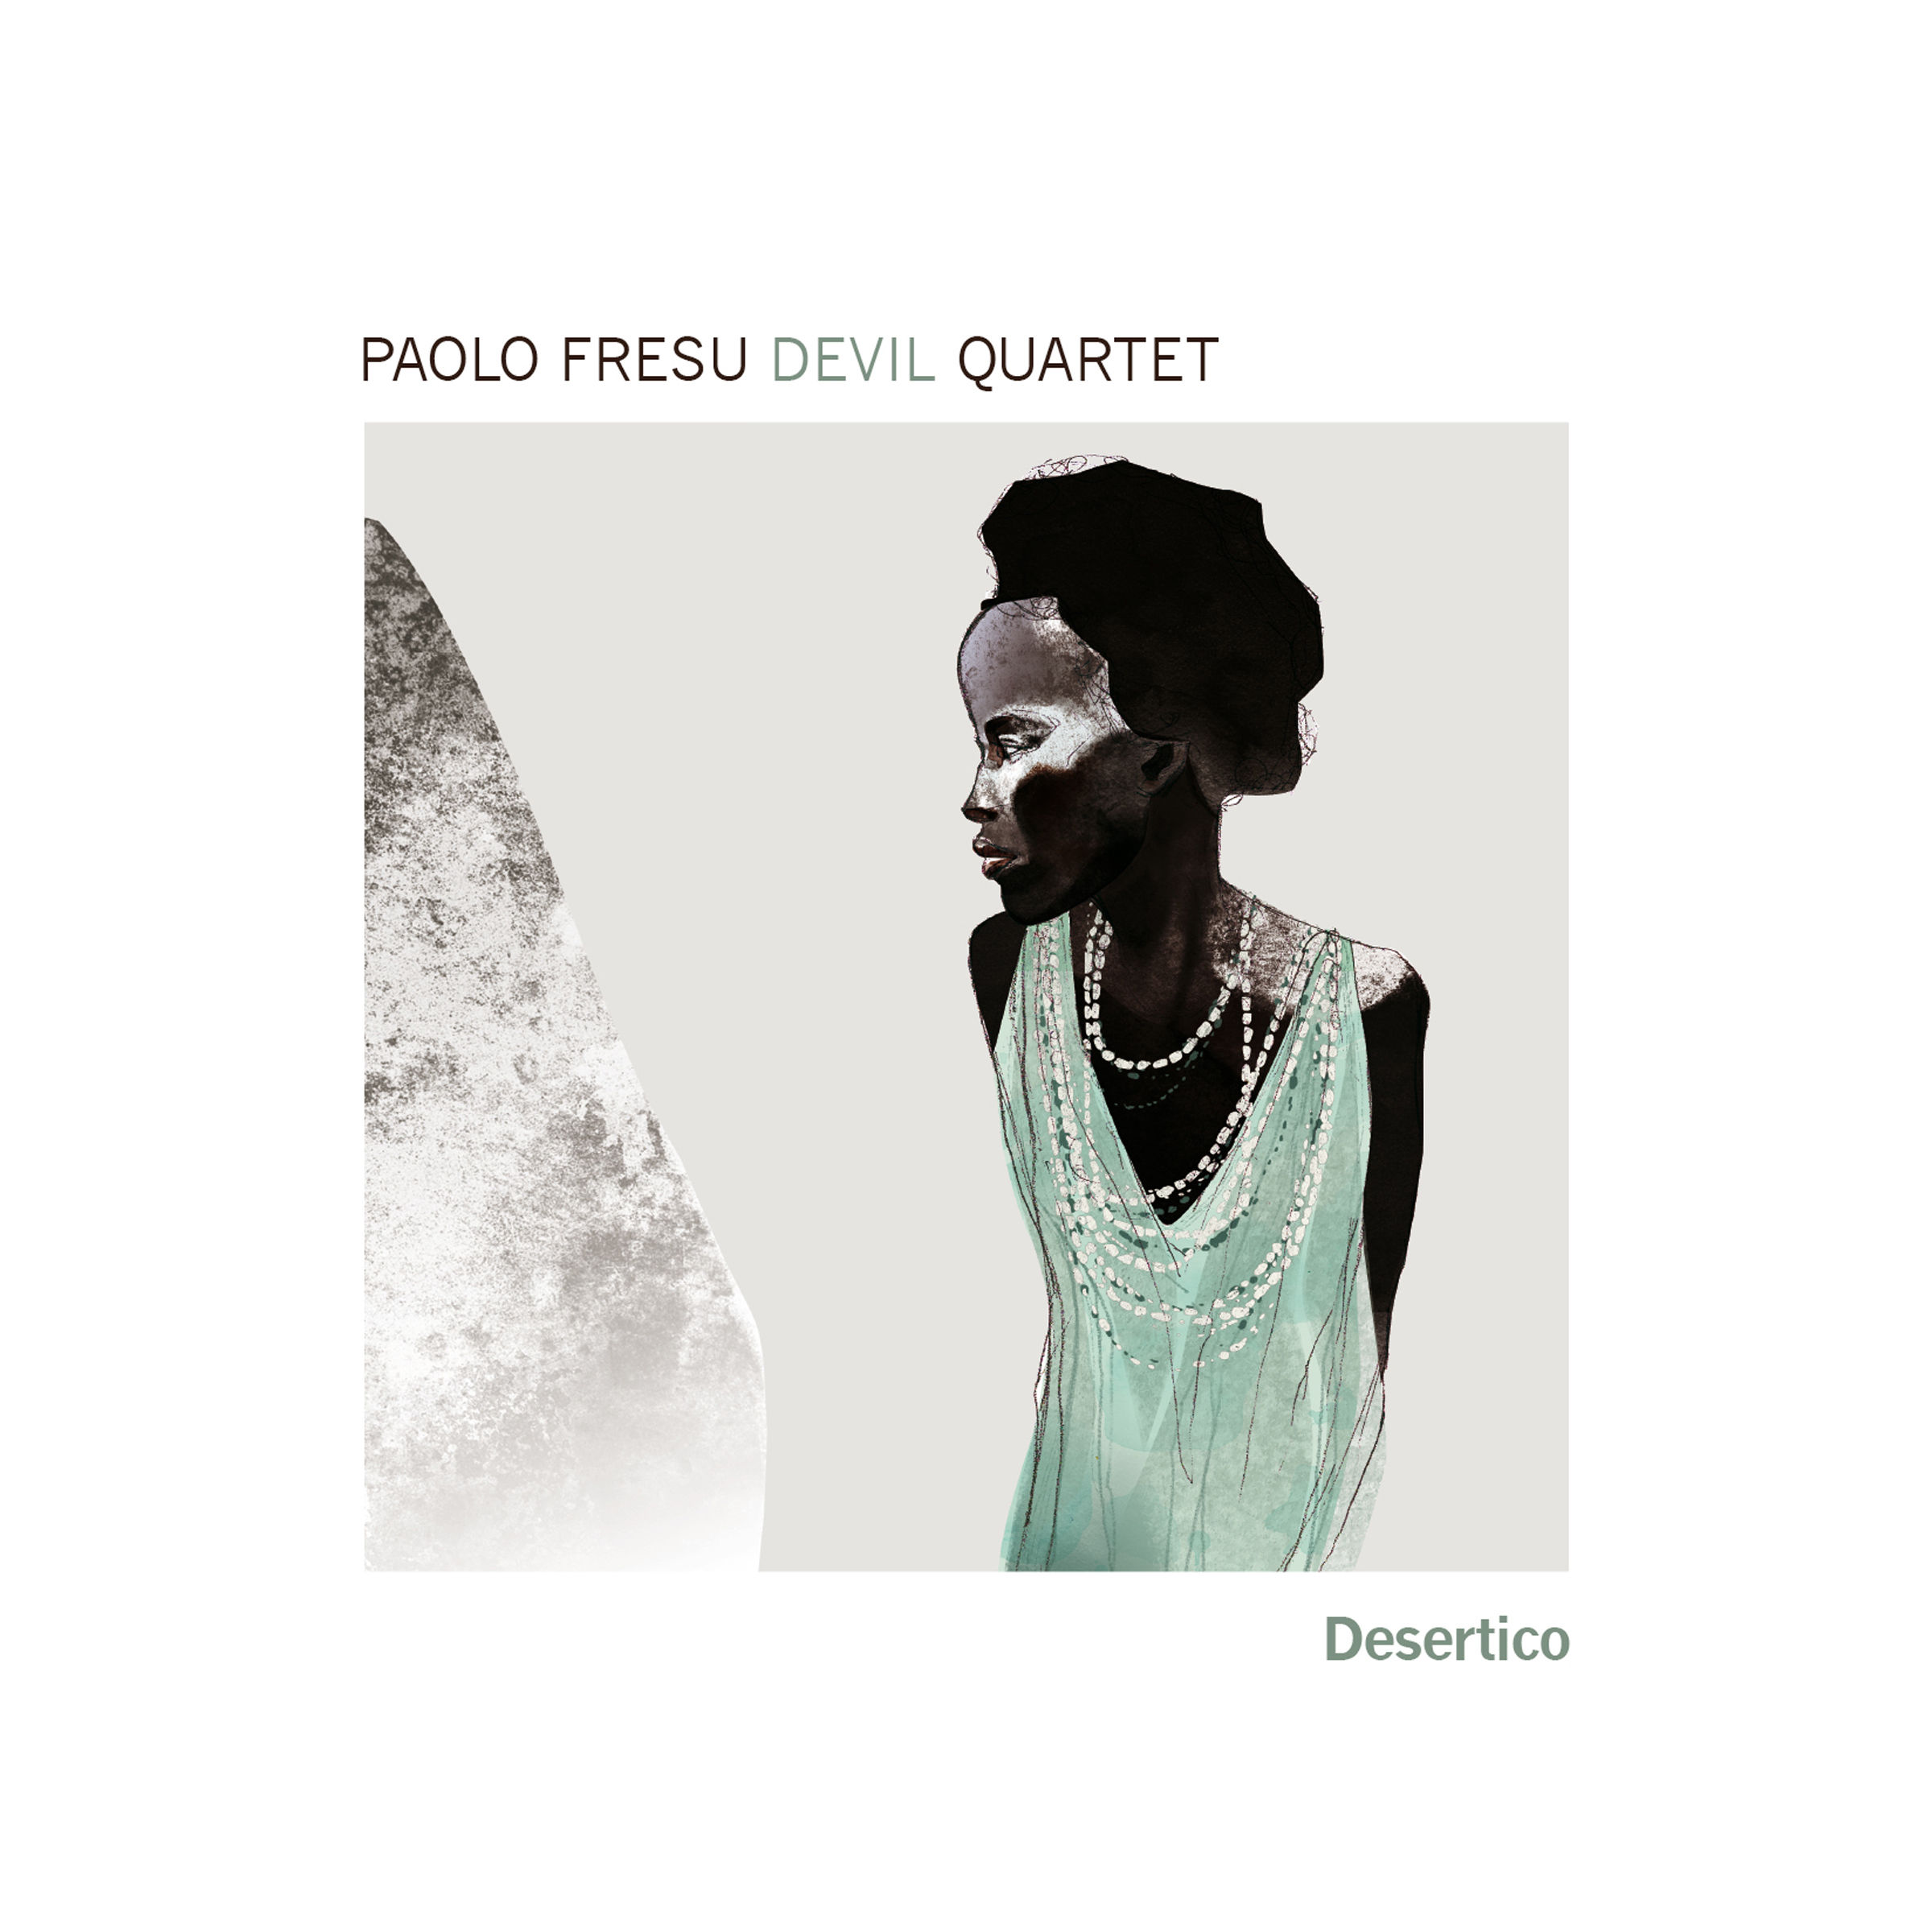 Paolo Fresu Devil Quartet - Desertico (2013/2017) [Qobuz FLAC 24bit/88,2kHz]